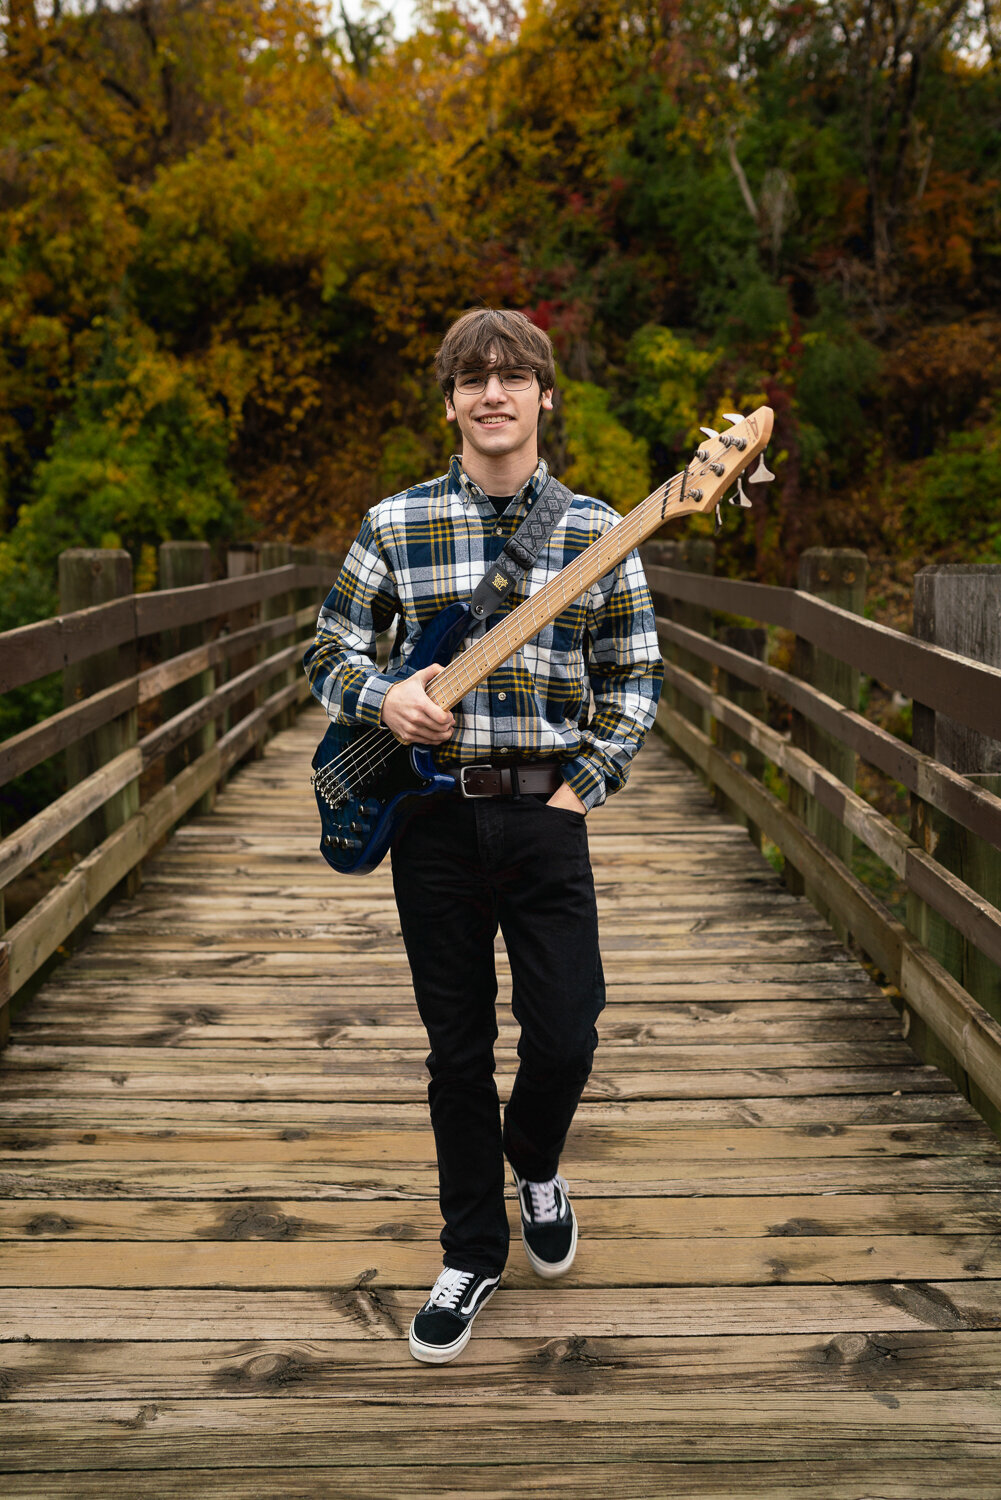 Senior boy walks across a bridge holding a bass guitar.